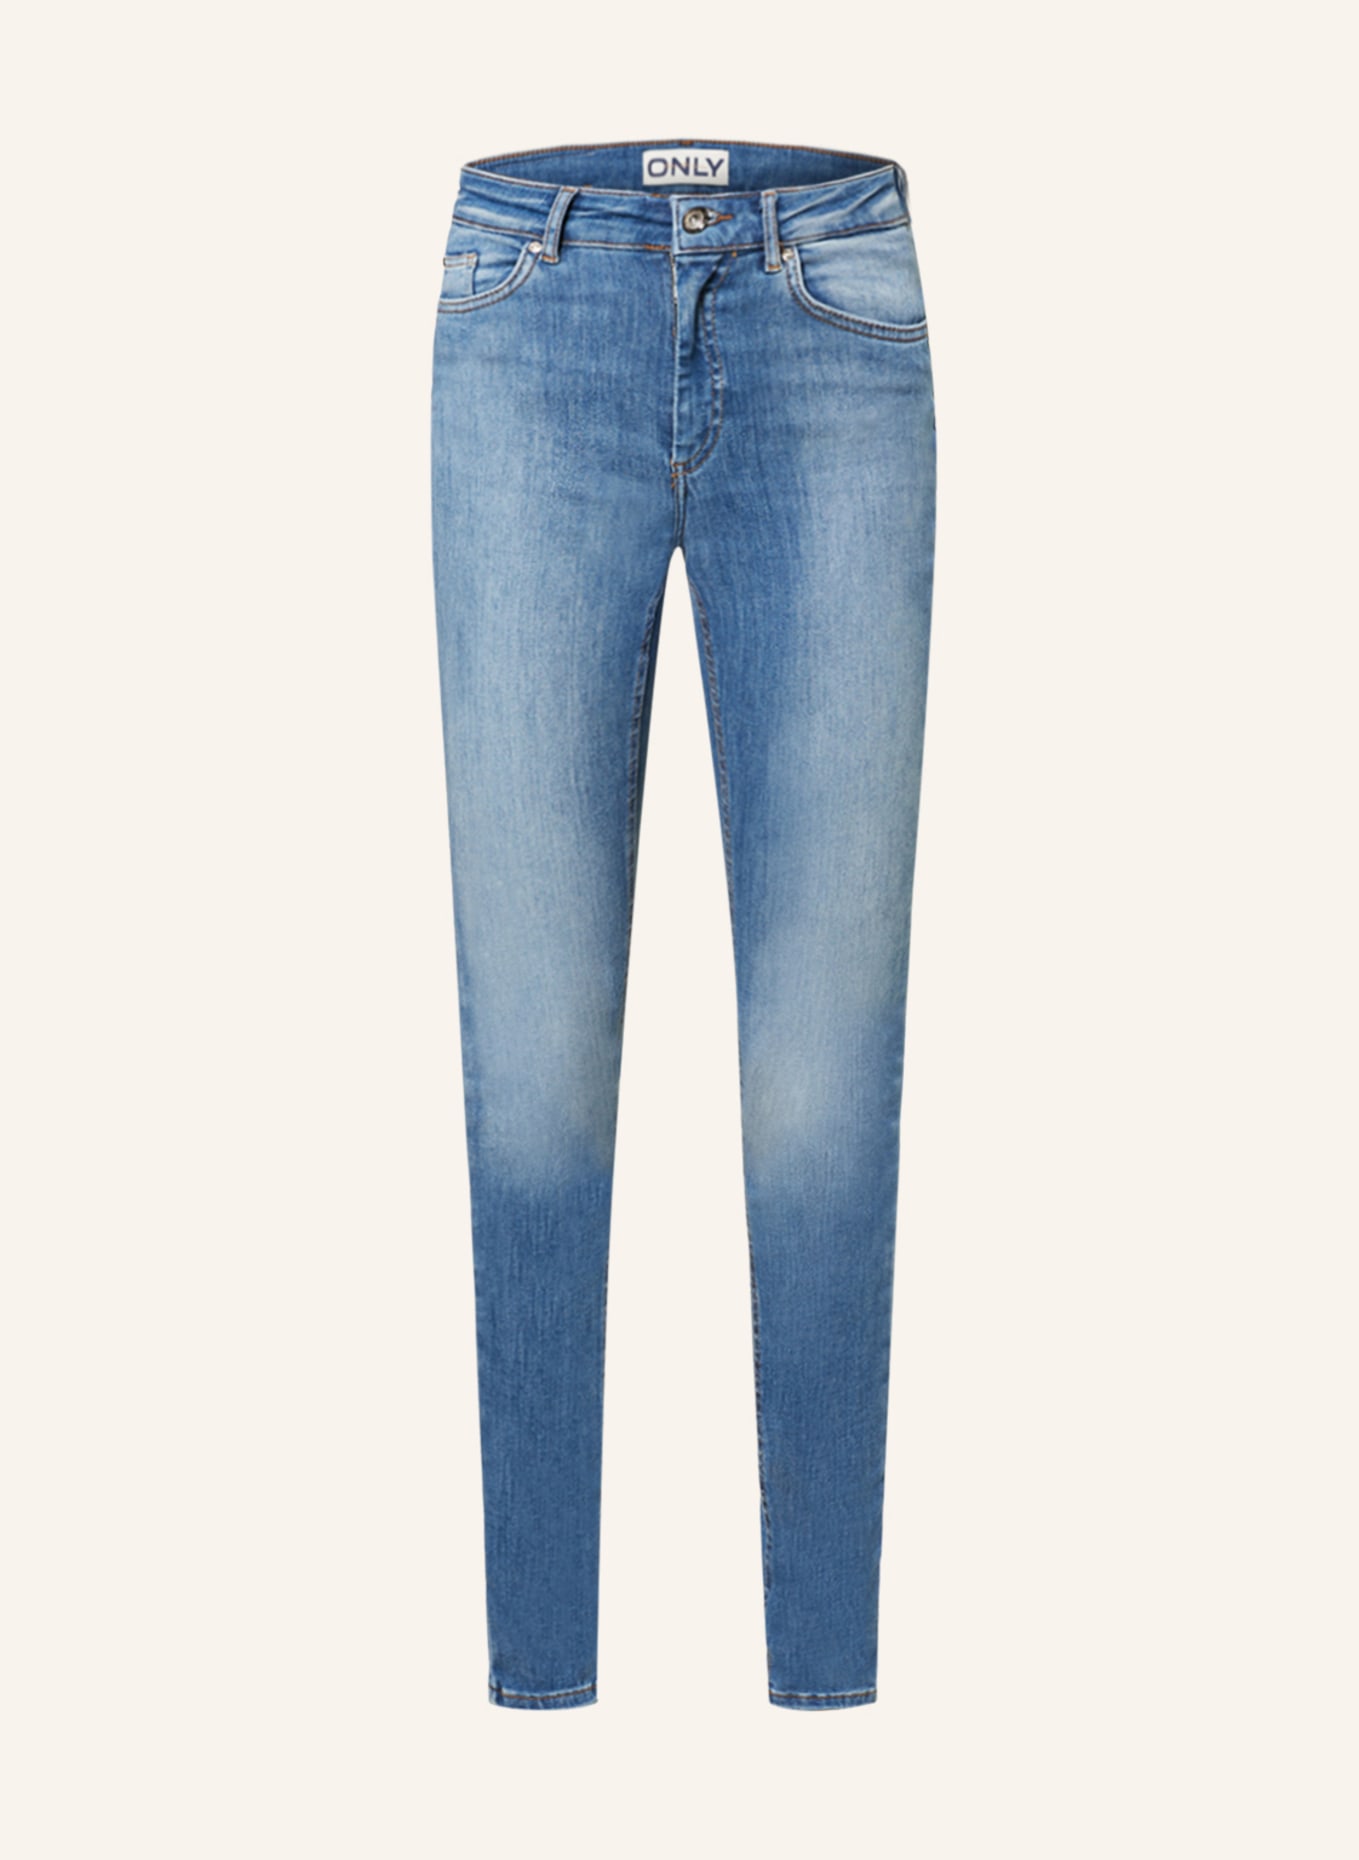 ONLY Skinny Jeans, Farbe: LIGHT BLUE DENIM (Bild 1)